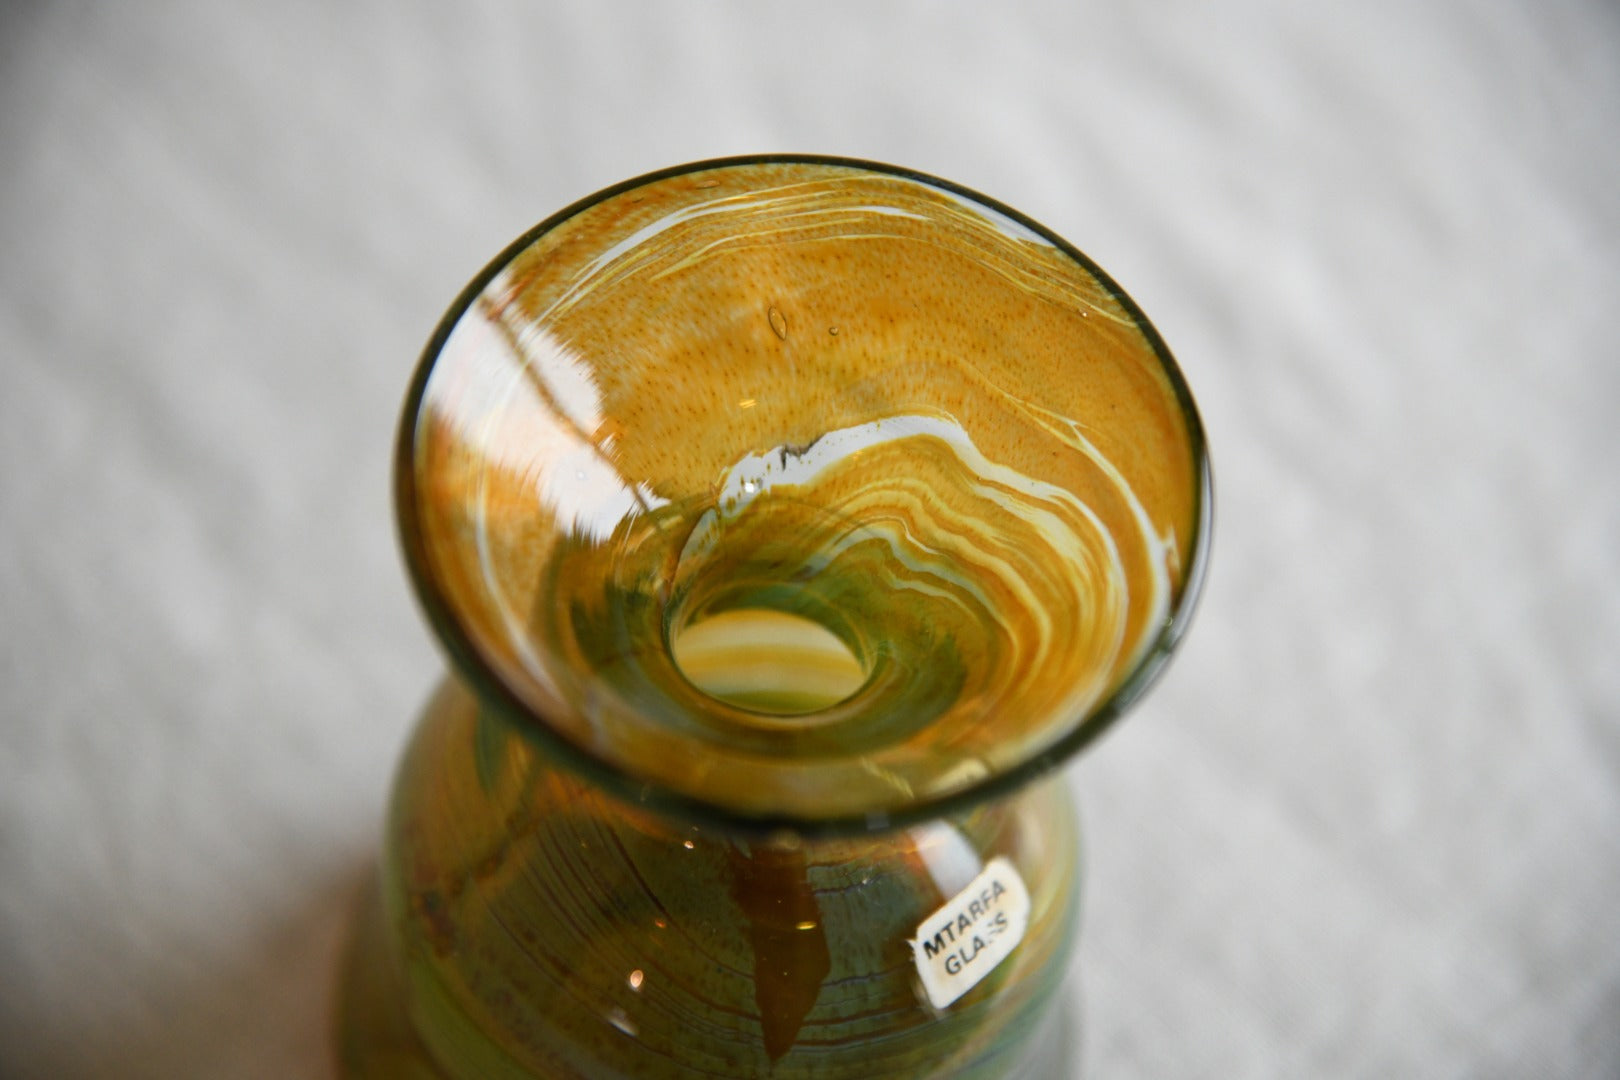 Mtarfa Glass Vase